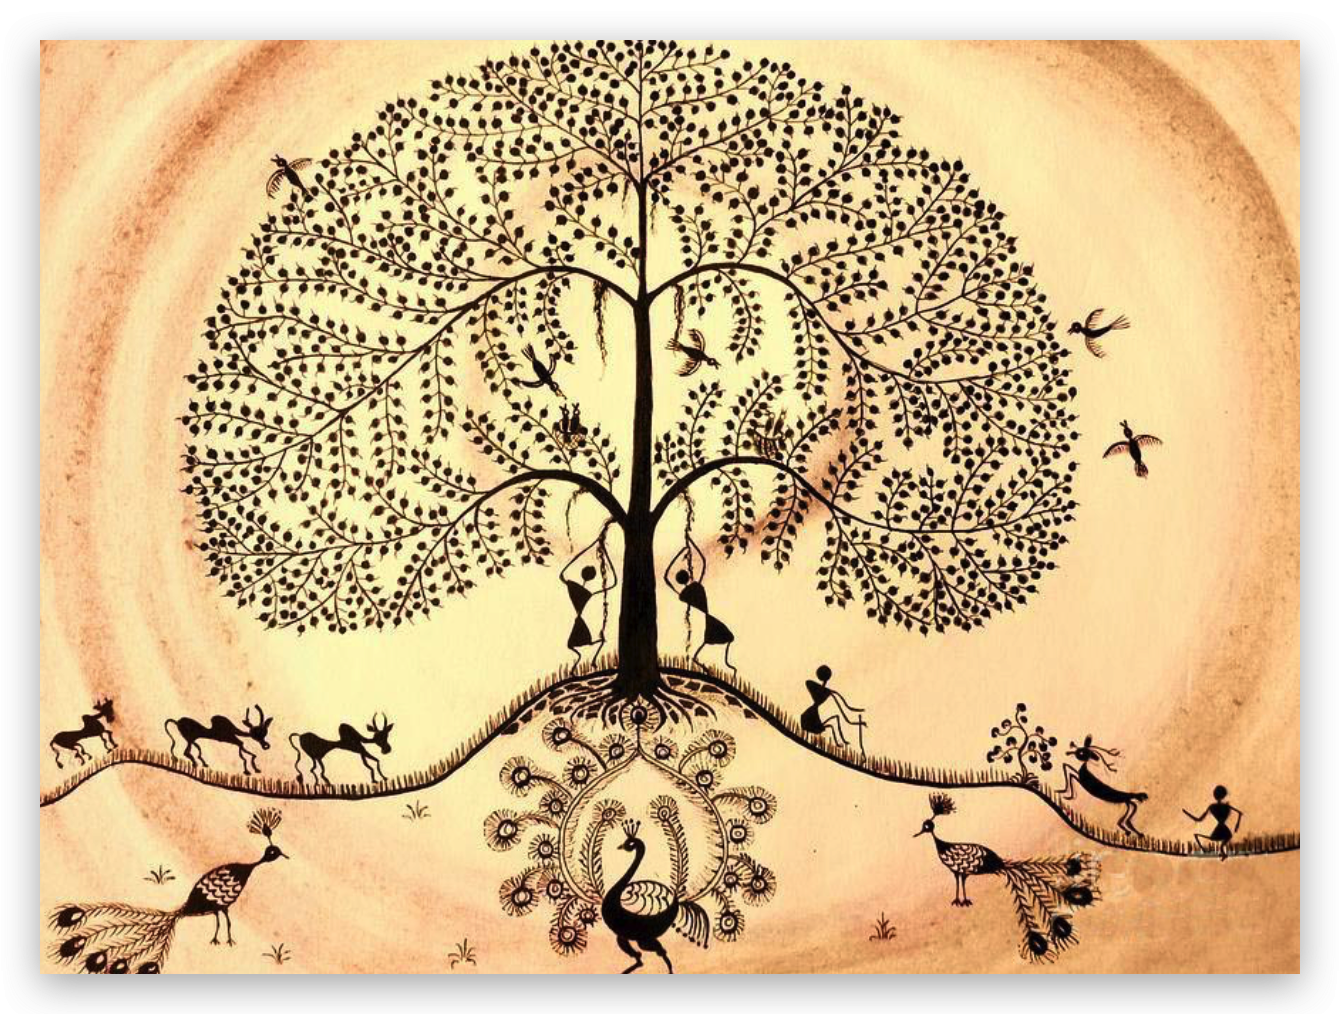 Древо культуры. Дерево фусан китайская мифология. Мировое Древо Китая дерево фусан. Китайское Древо жизни Киен-му. Мировое Древо фусан картина.